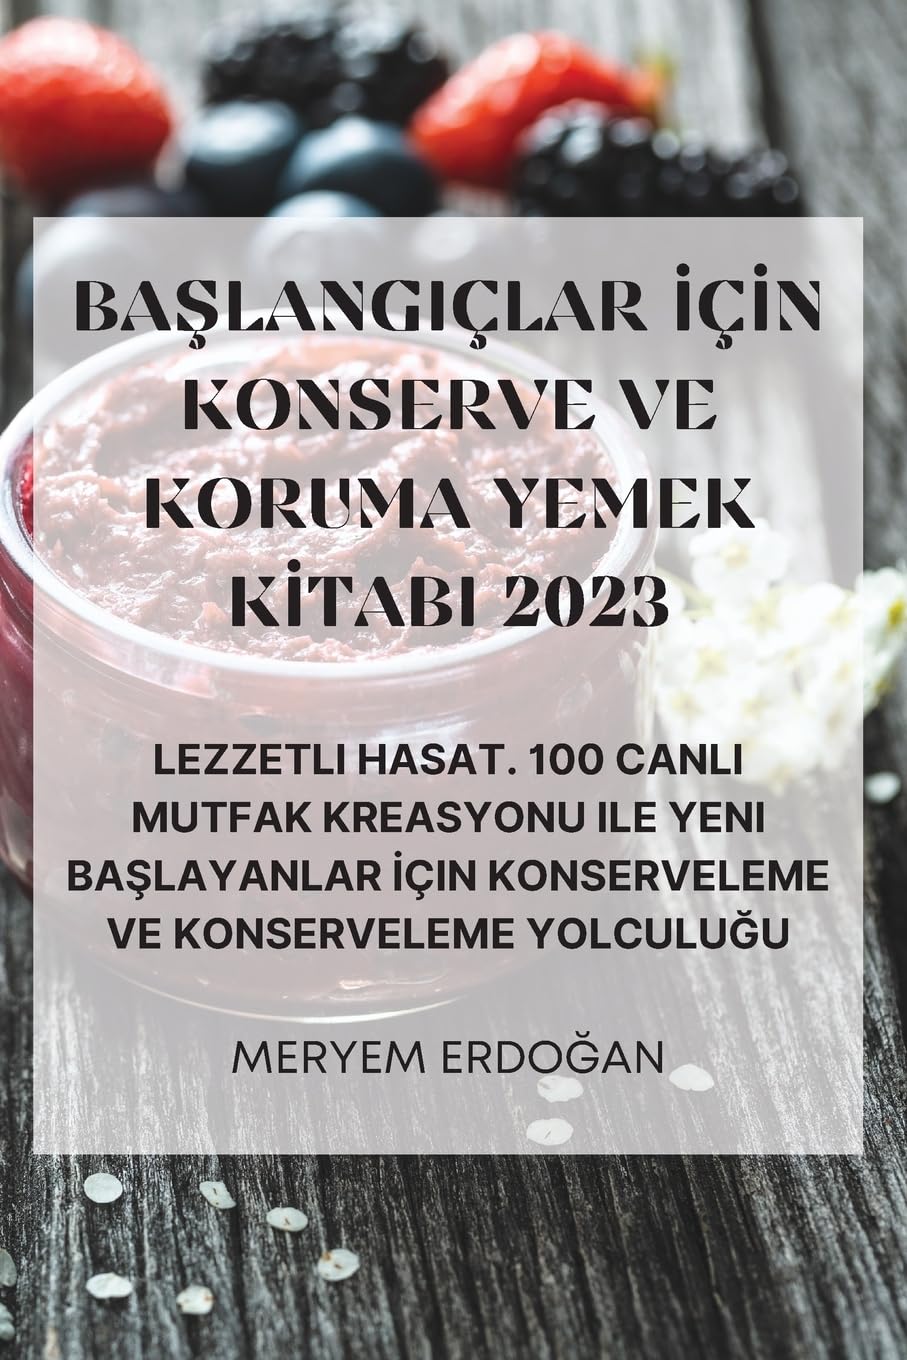 BaŞlangiçlar İçİn Konserve Ve Koruma Yemek Kİtabi 2023 (Turkish Edition)